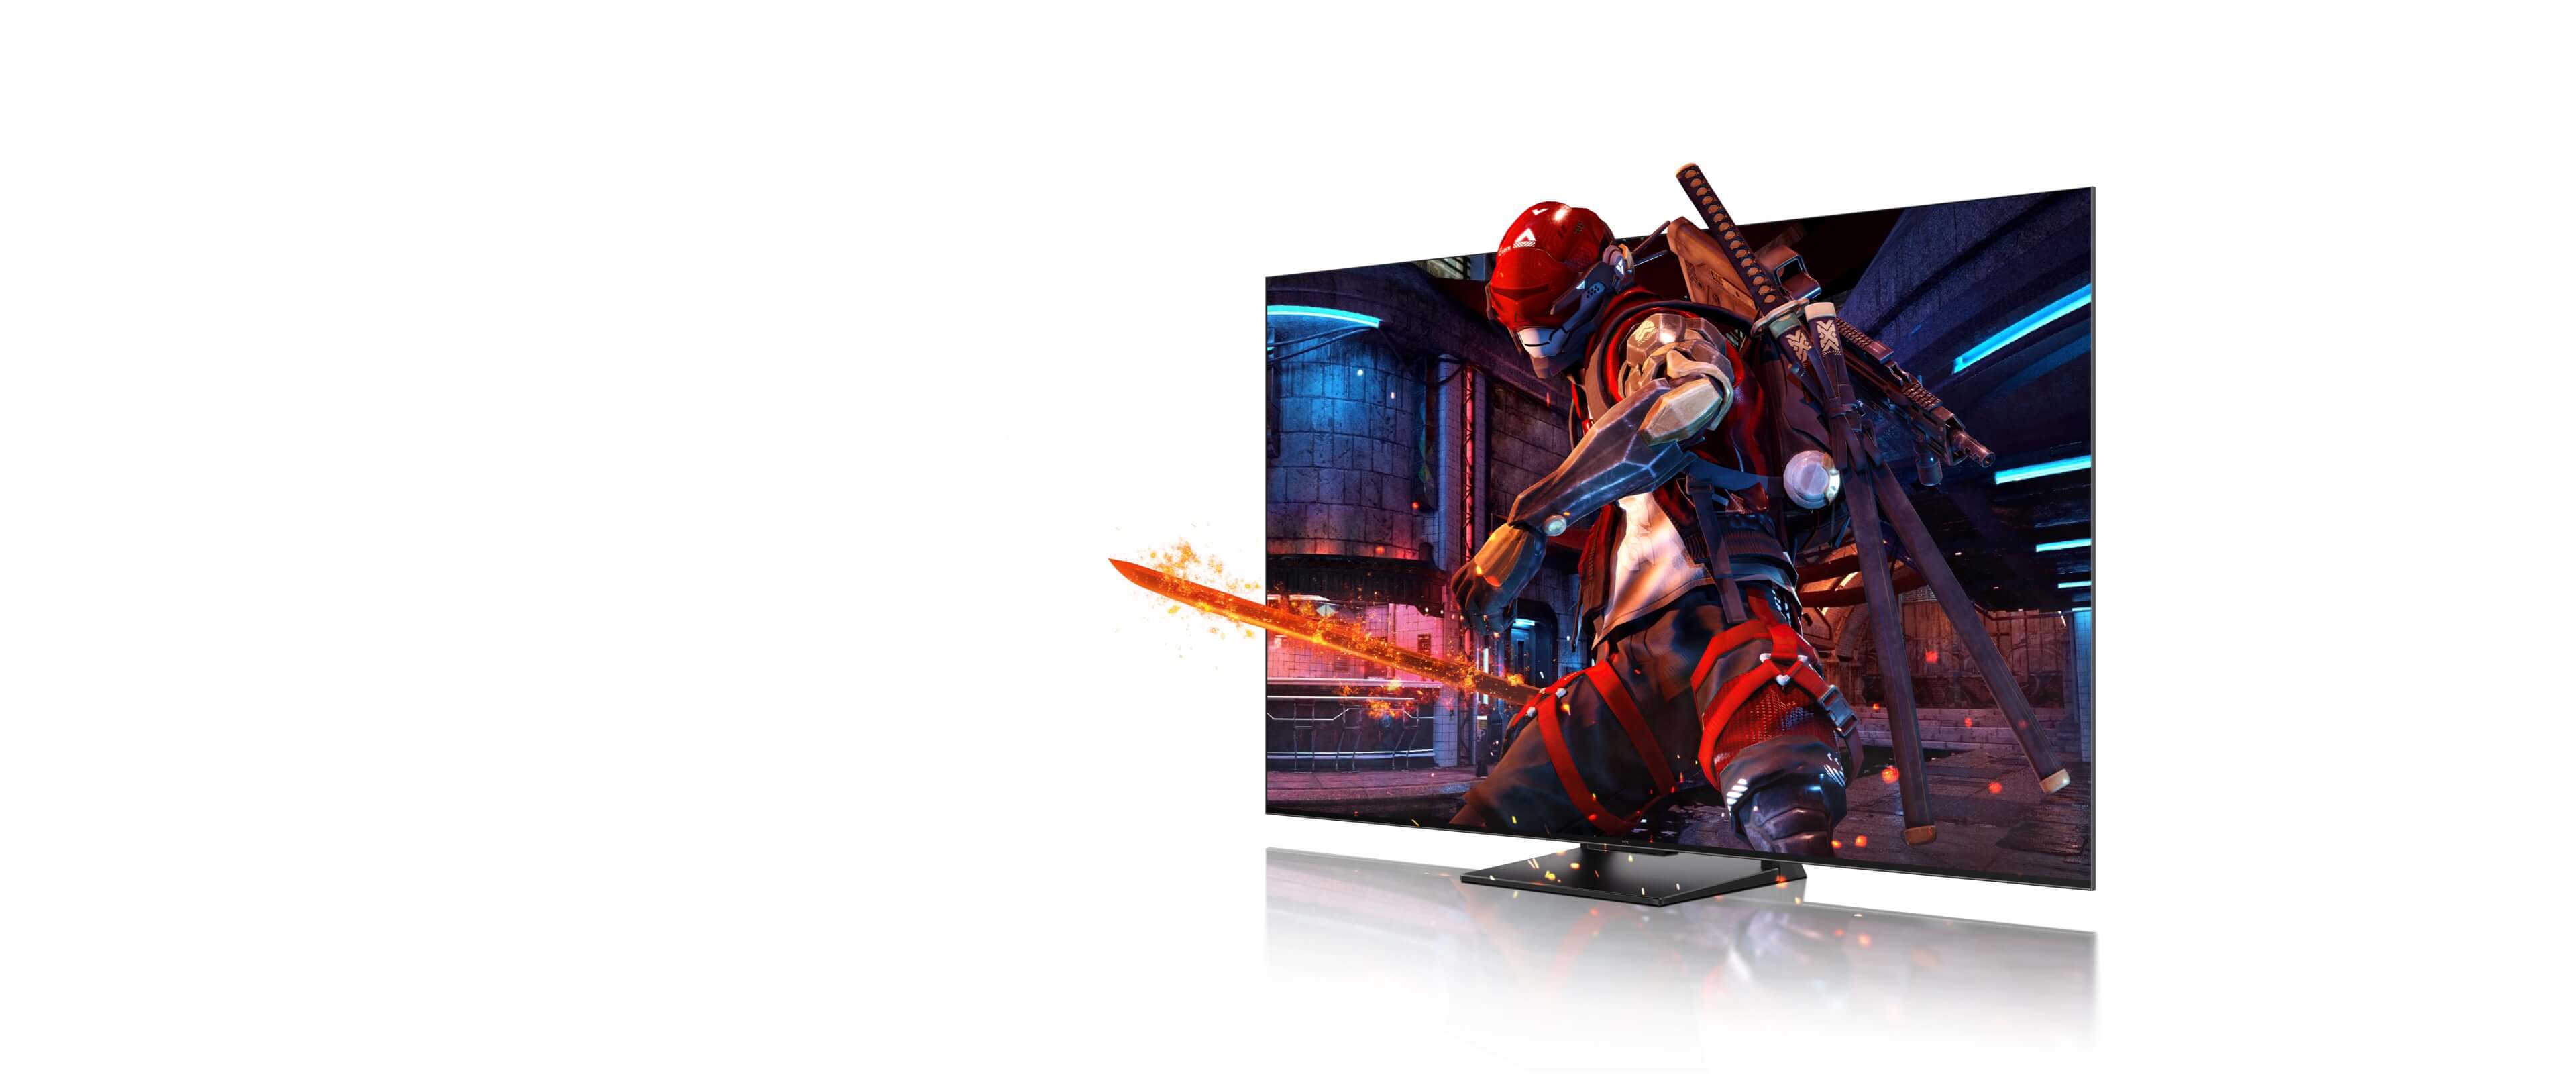 TCL 4K QLED TV <br>Game Master Pro 2.0